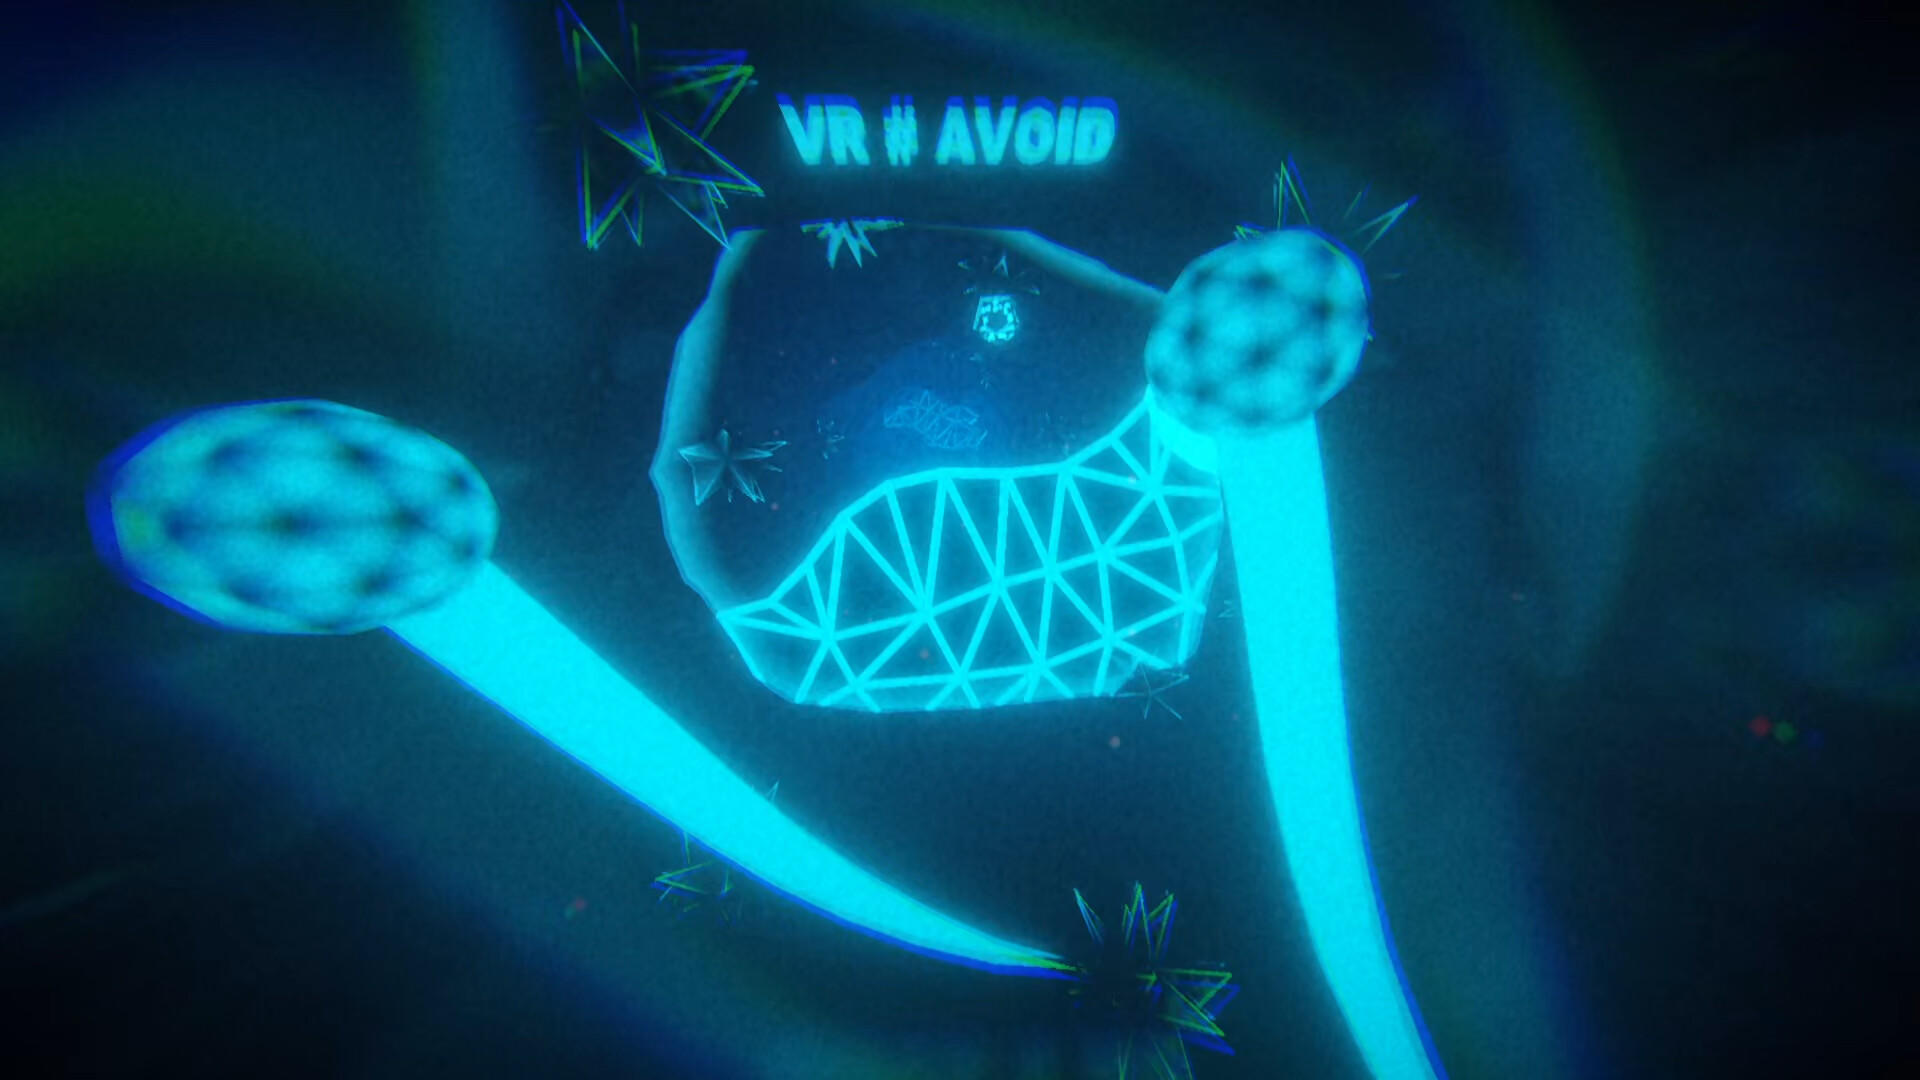 Screenshot of VR # AVOID